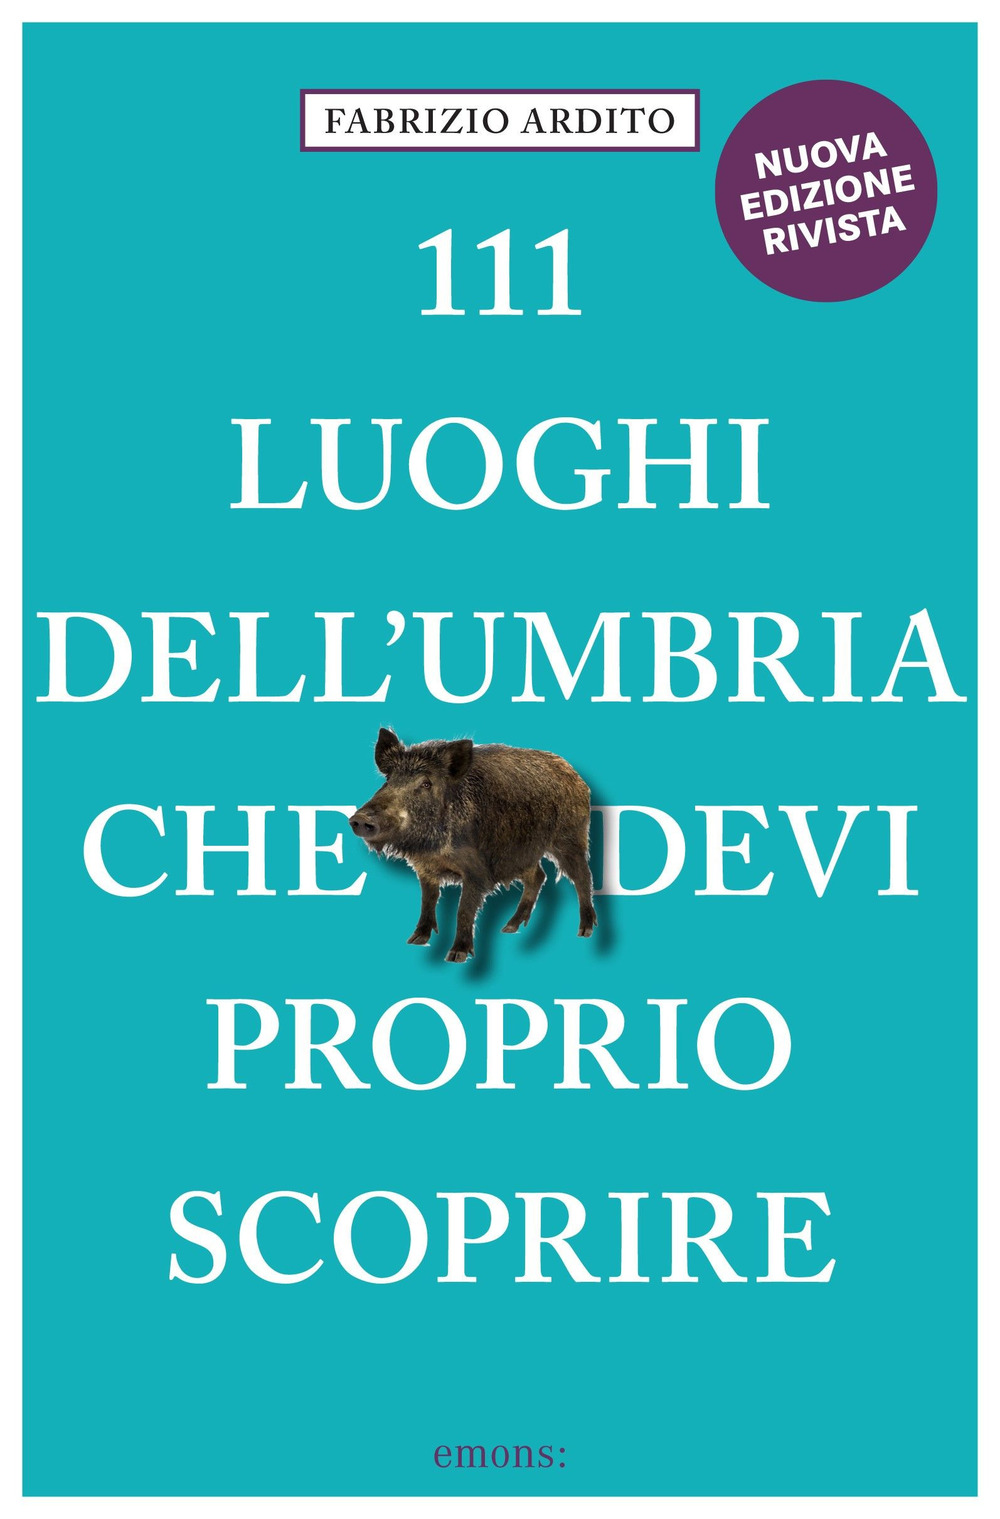 111 LUOGHI DELL'UMBRIA (nuova edizione) CHE DEVI PROPRIO SCOPRIRE - Ardito Fabrizio - 9783740813123